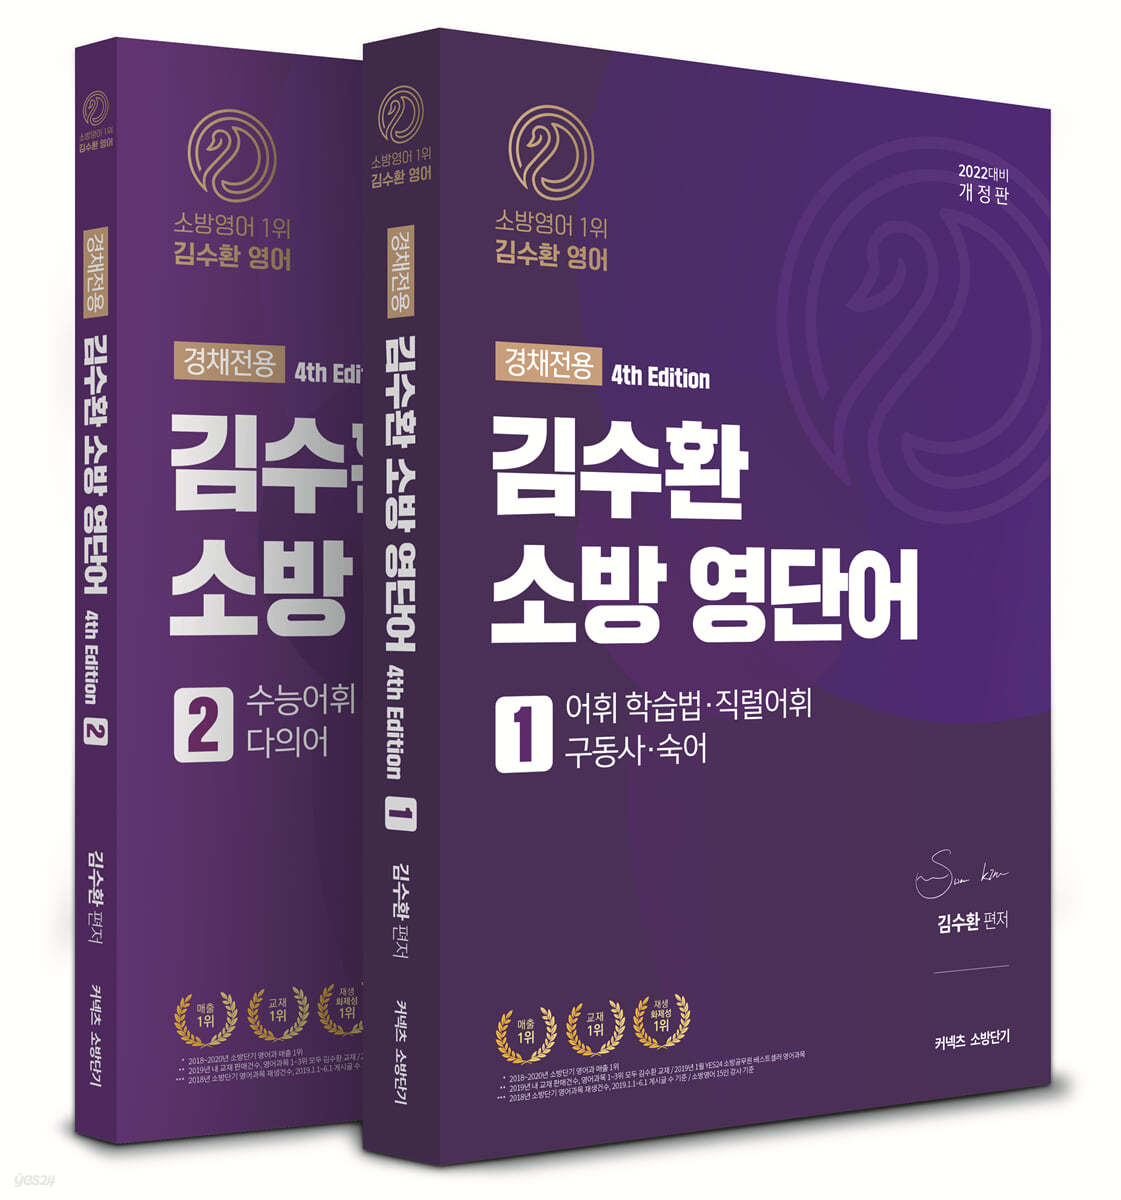 2022 김수환 소방 영단어 4th Edition 경채전용